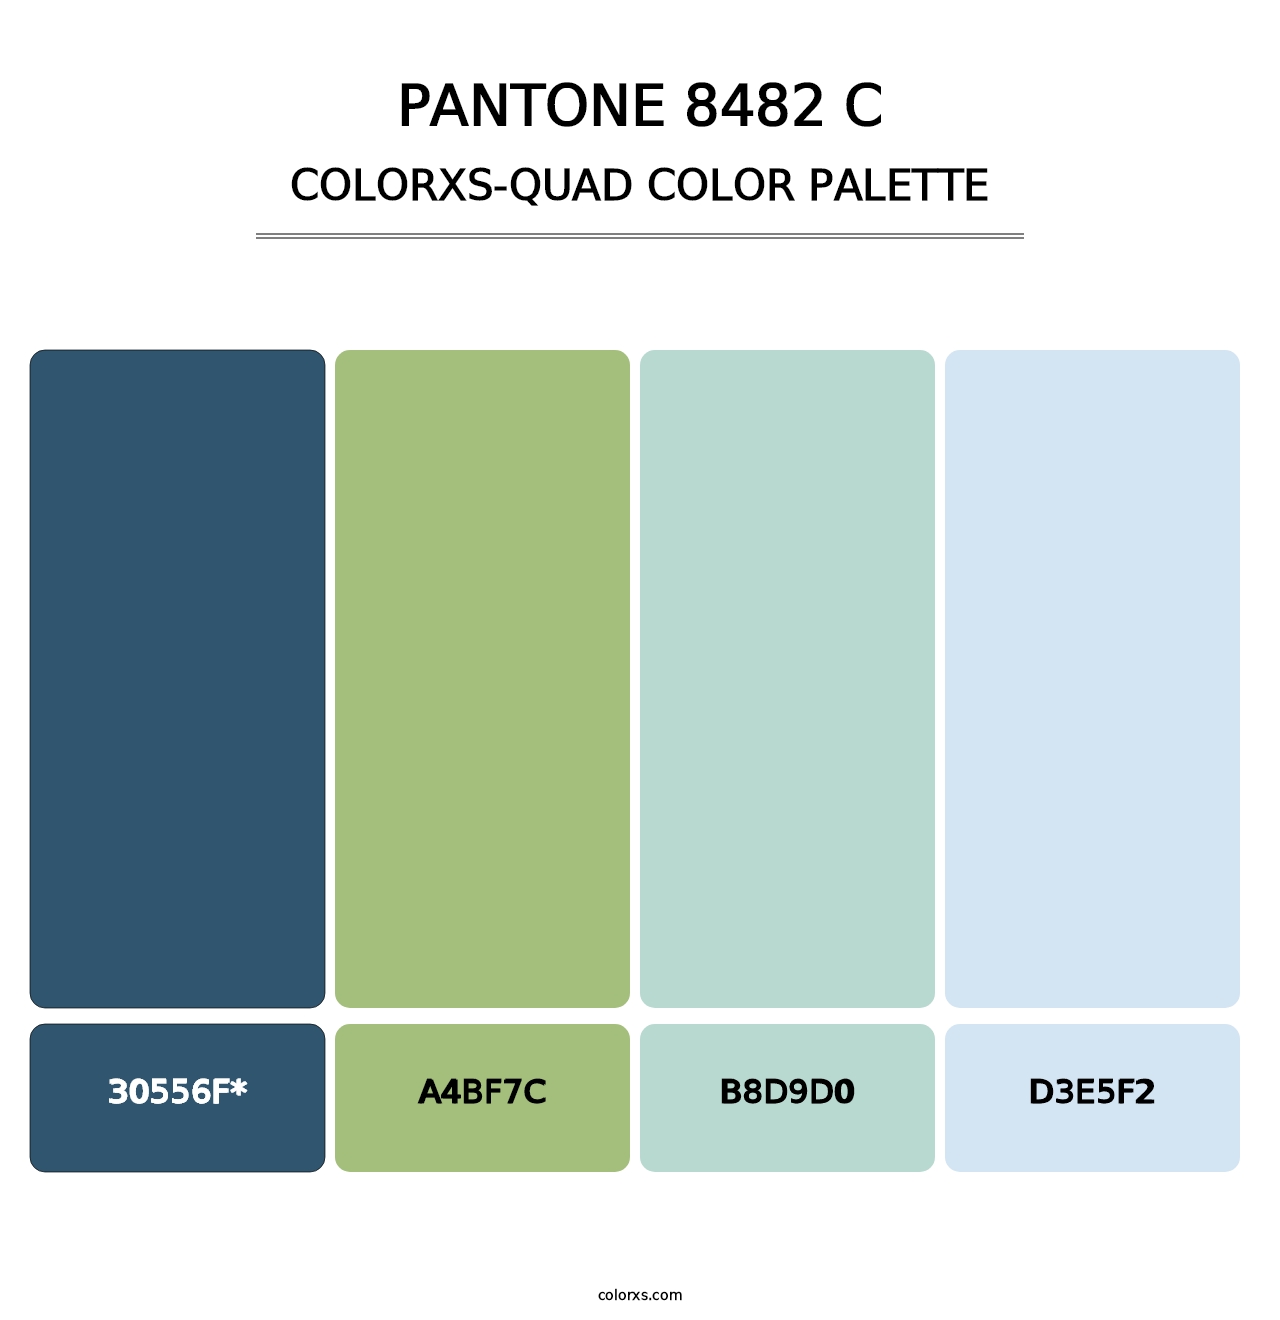 PANTONE 8482 C - Colorxs Quad Palette